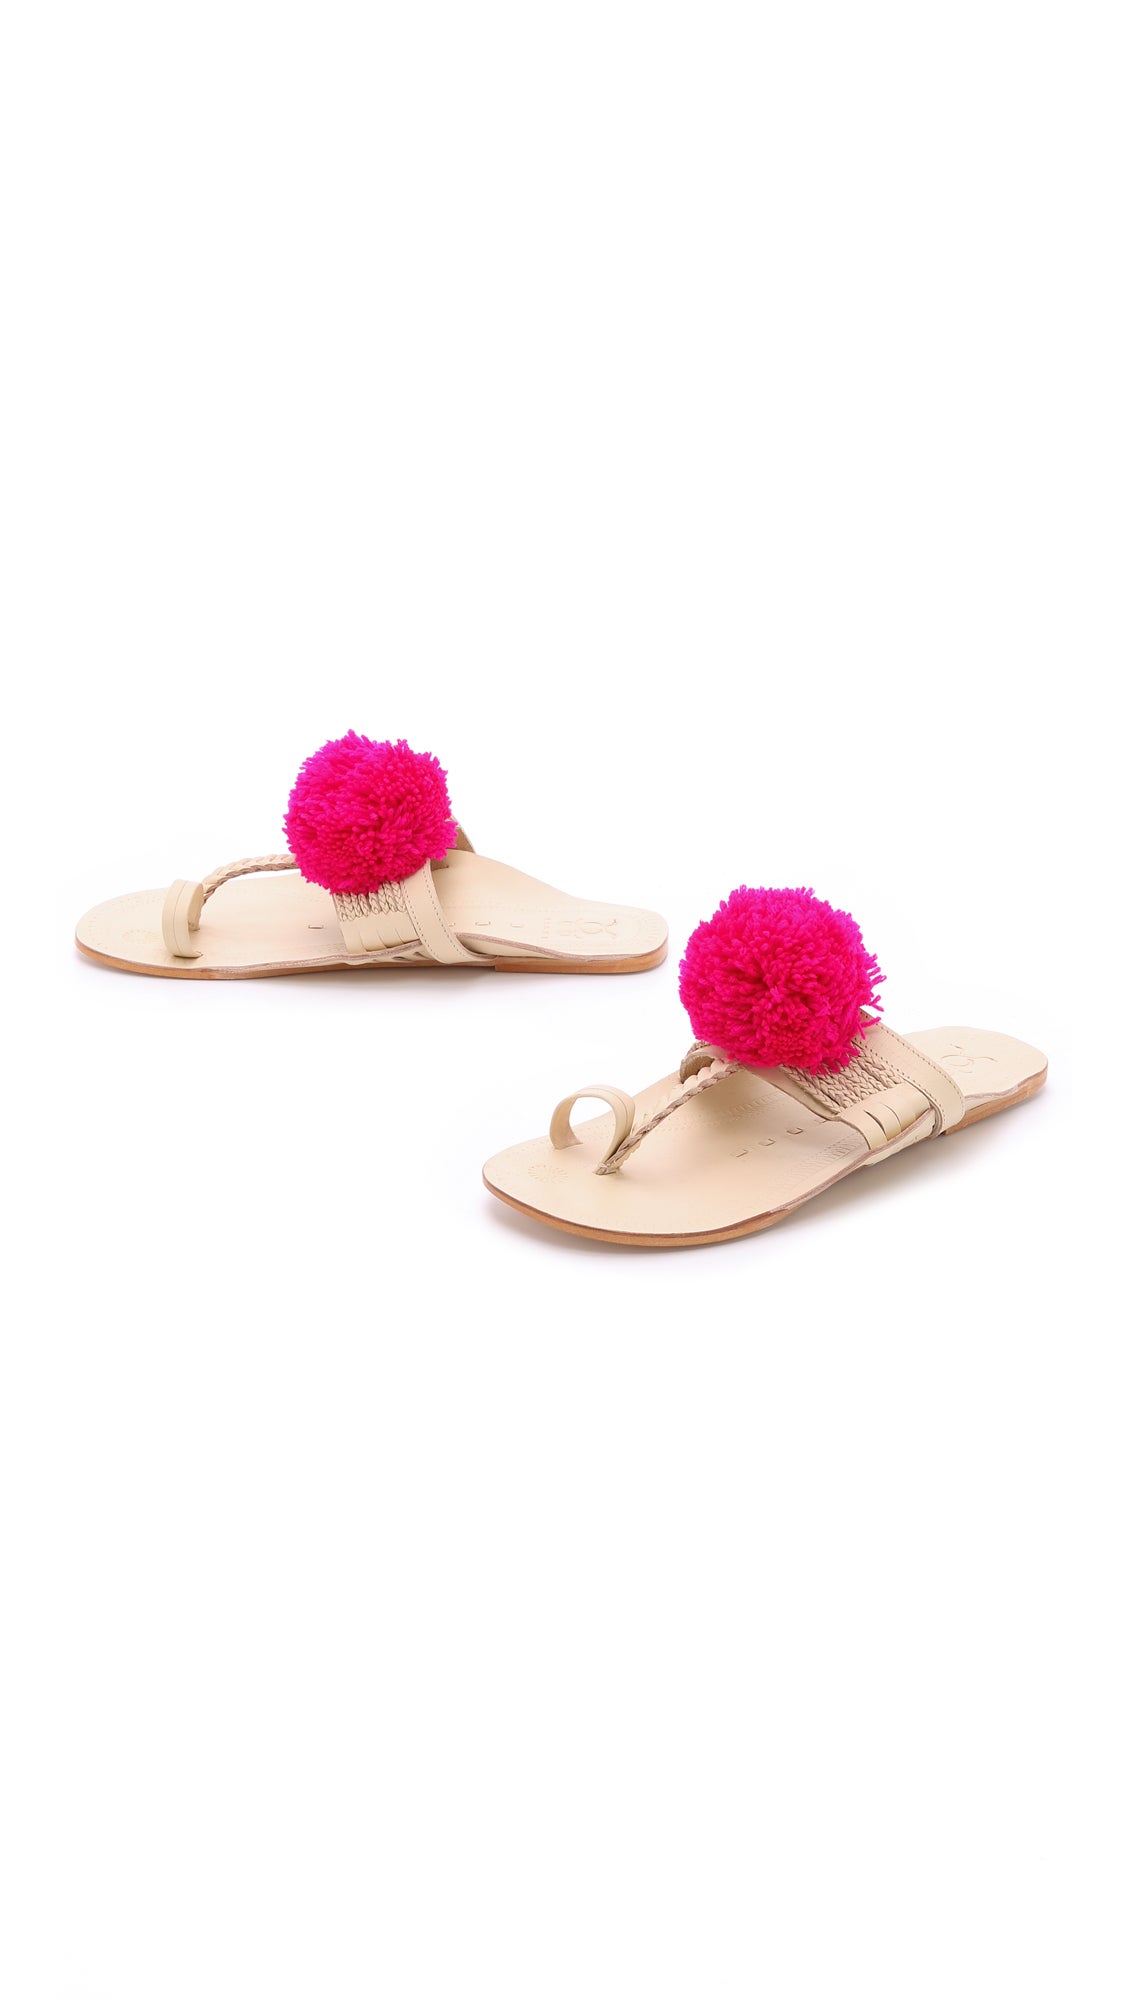 Let it Slide: Summer's Must-Have Slide-On Sandals
